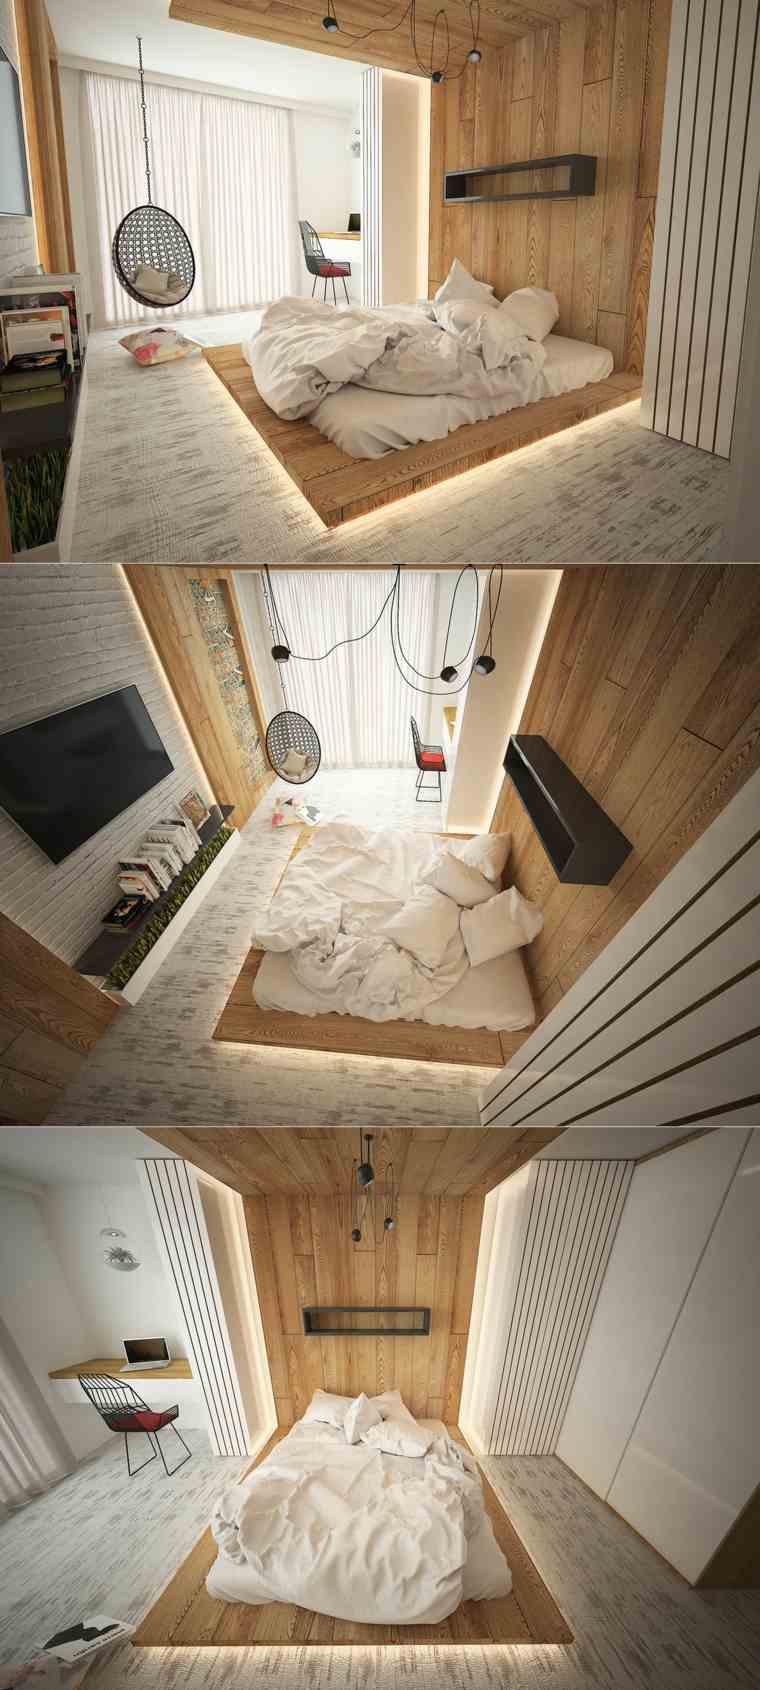 luminaire chambre suspension idée lit fauteuil intérieur mur bois parquet design idée mobilier